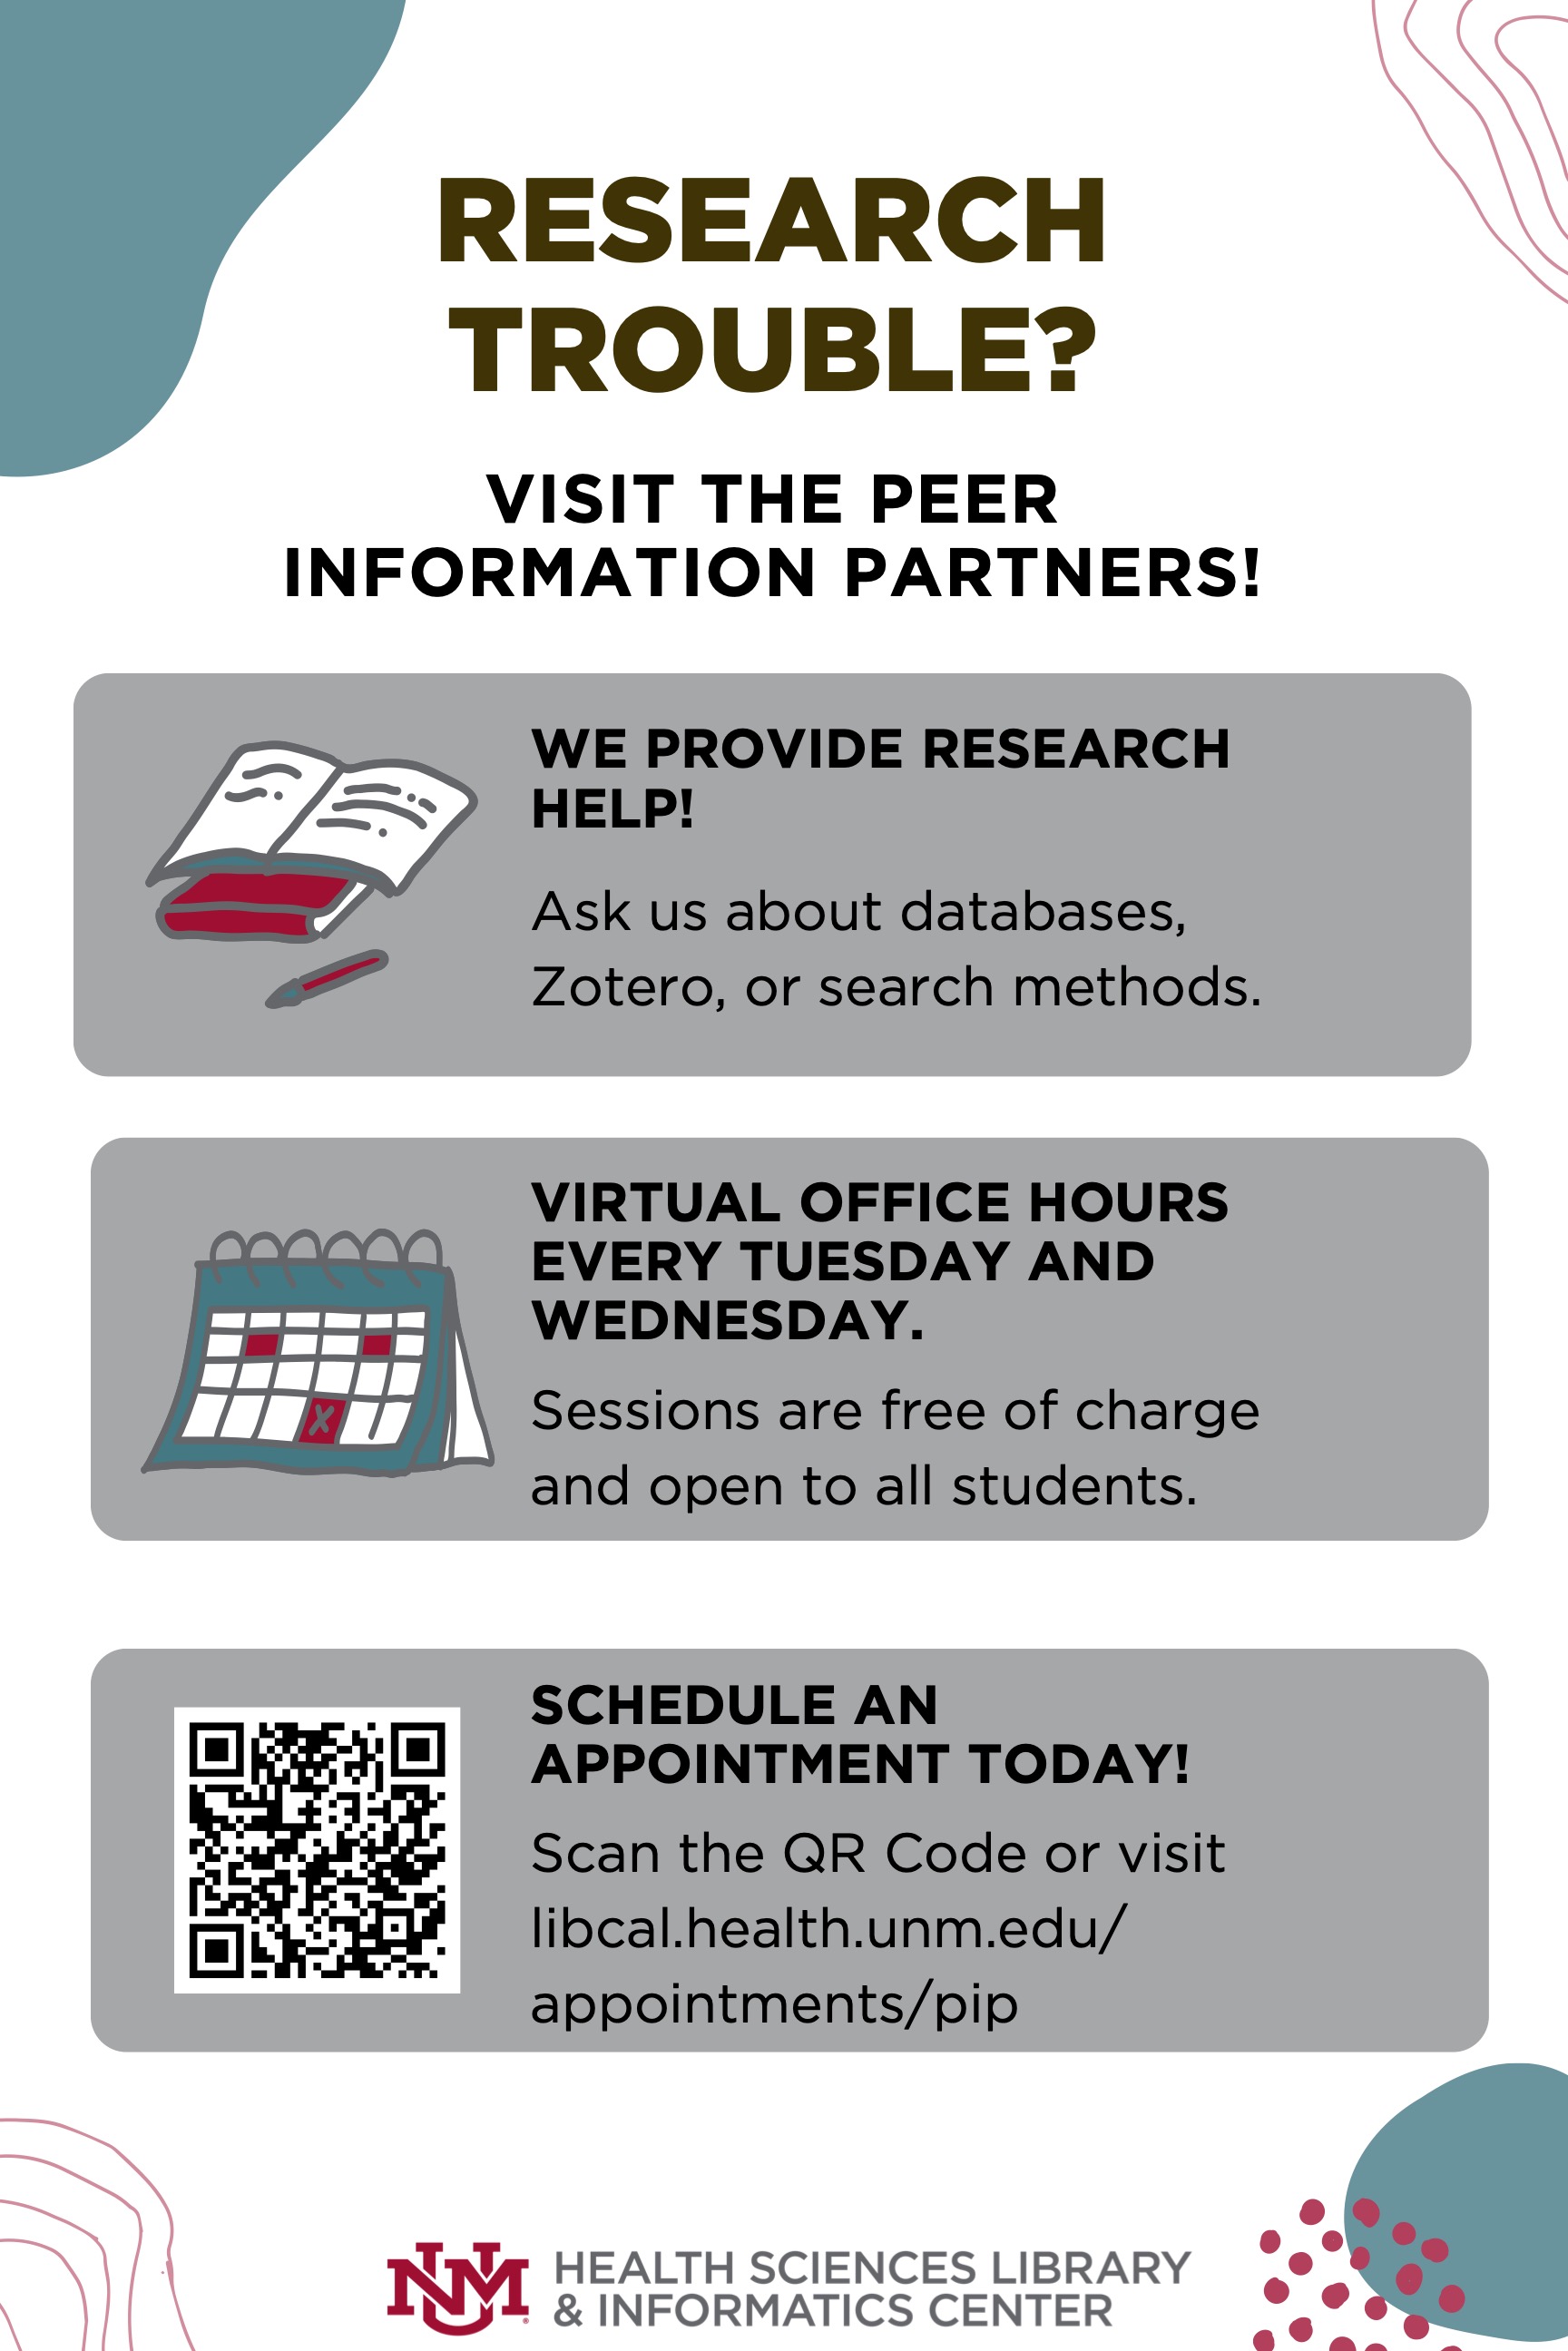 Flyer zur Rechercheassistenz bei Peer Information Partners, kostenlose Sessions und virtuelle Sprechstunde jeden Dienstag und Mittwoch. Weitere Informationen finden Sie unter libcal.health.unm.edu/appointments/pip